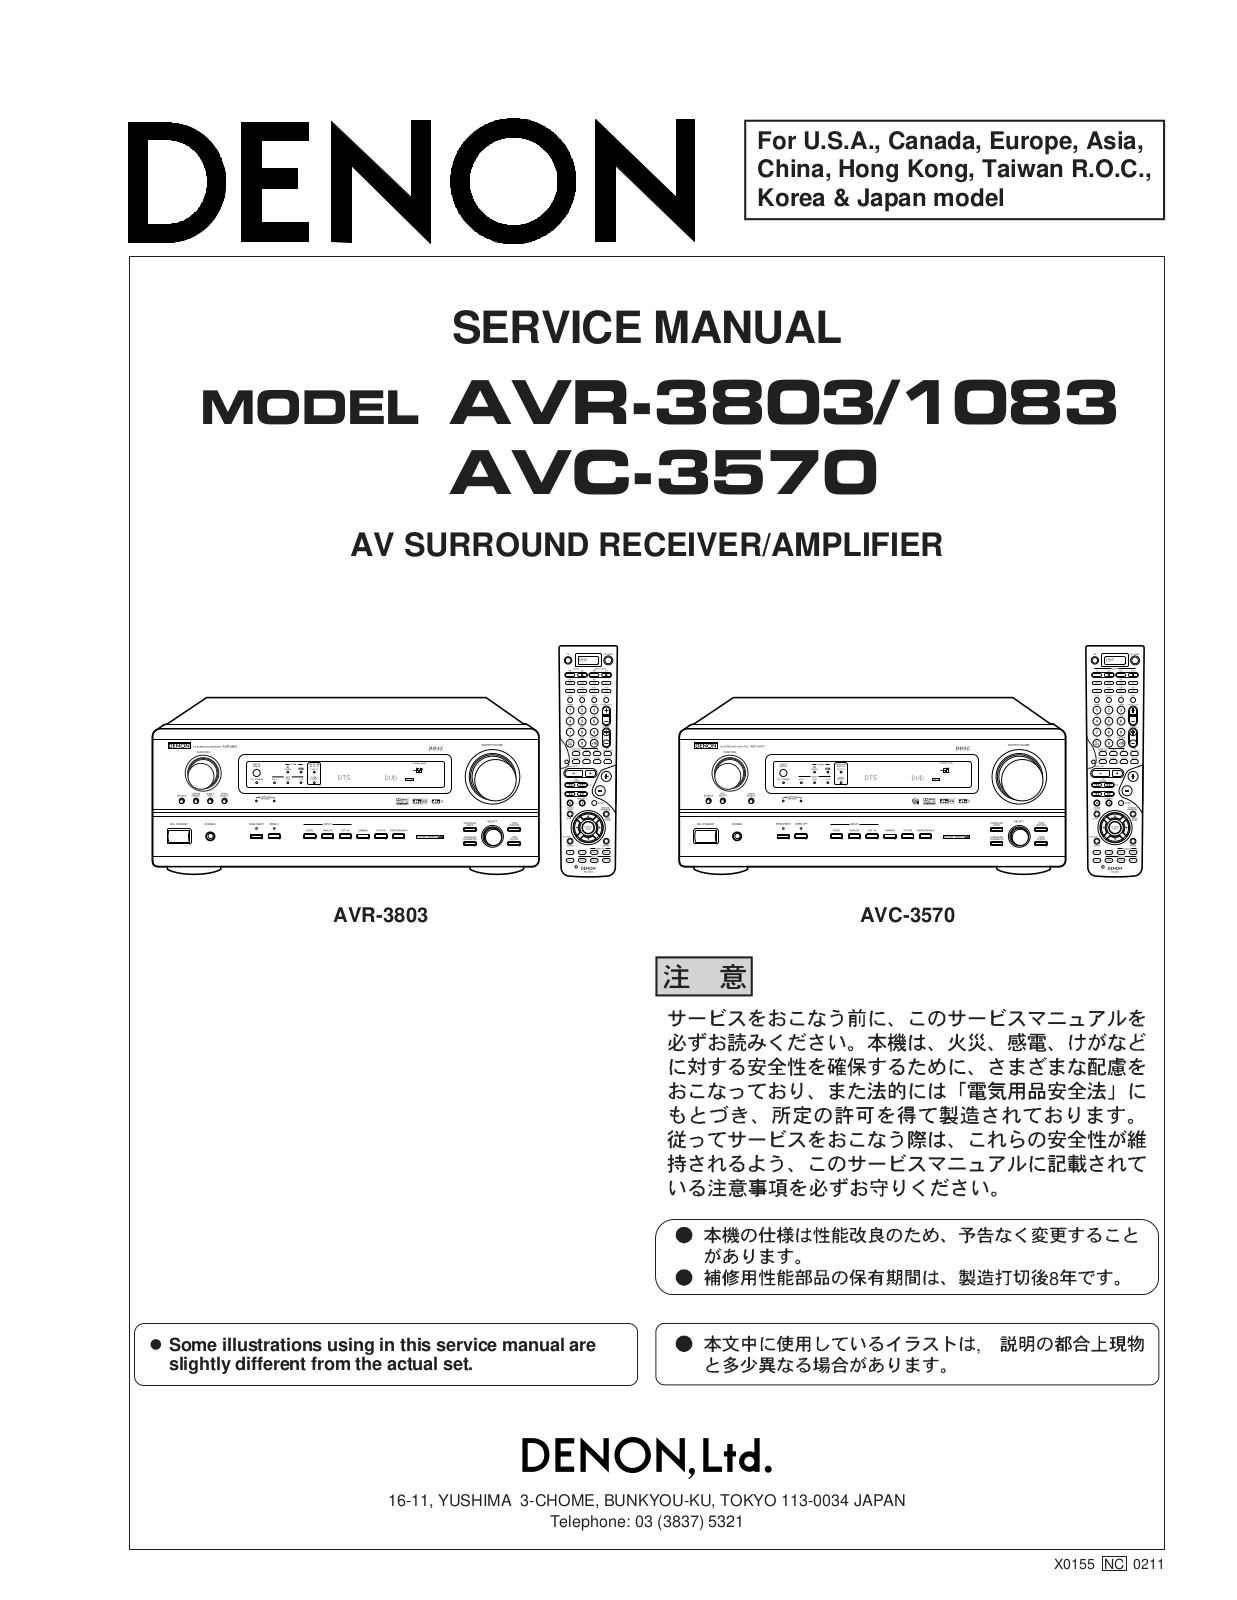 Denon AVC-1803, AVR-3803 Schematic